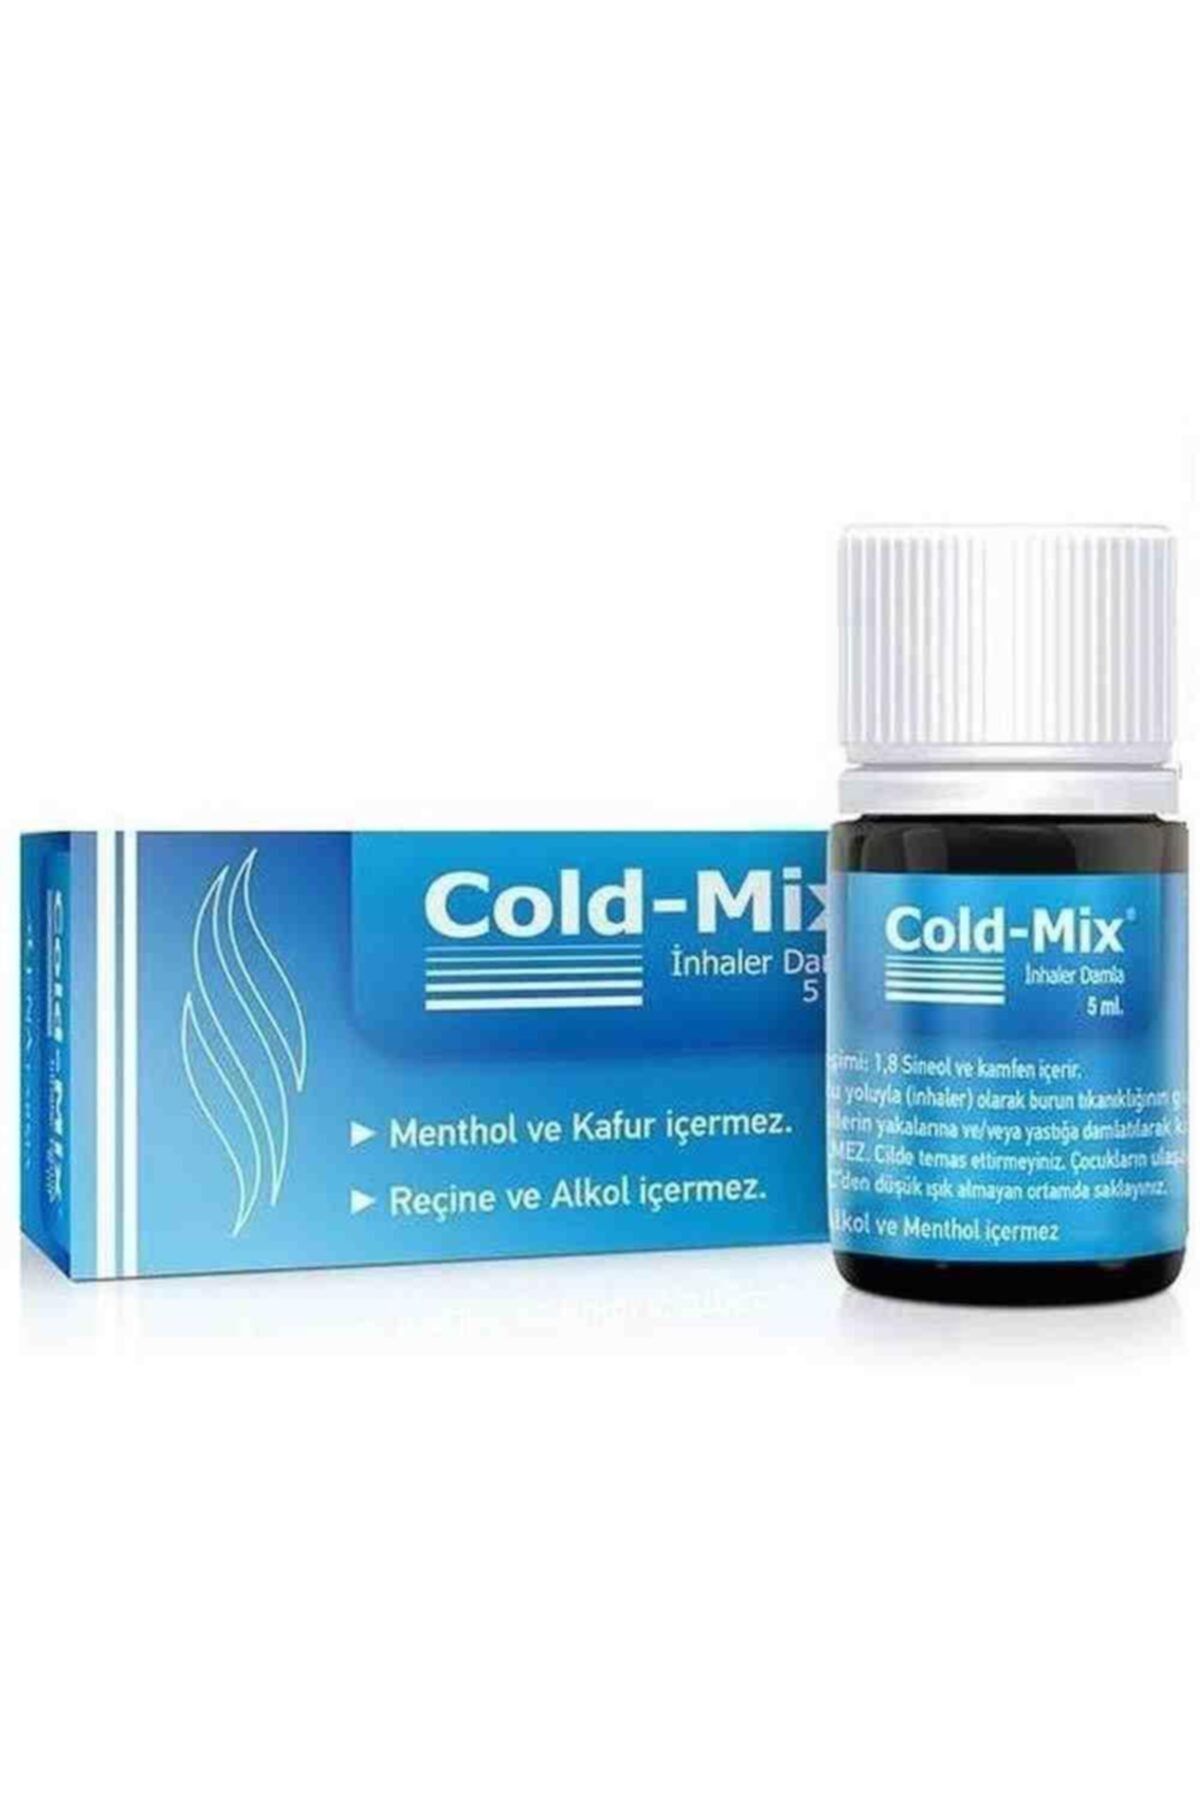 Cold-Mix Inhaler Damla Okaliptüs Ve Ladin Yağları Içeren Inhaler Damla 5ml